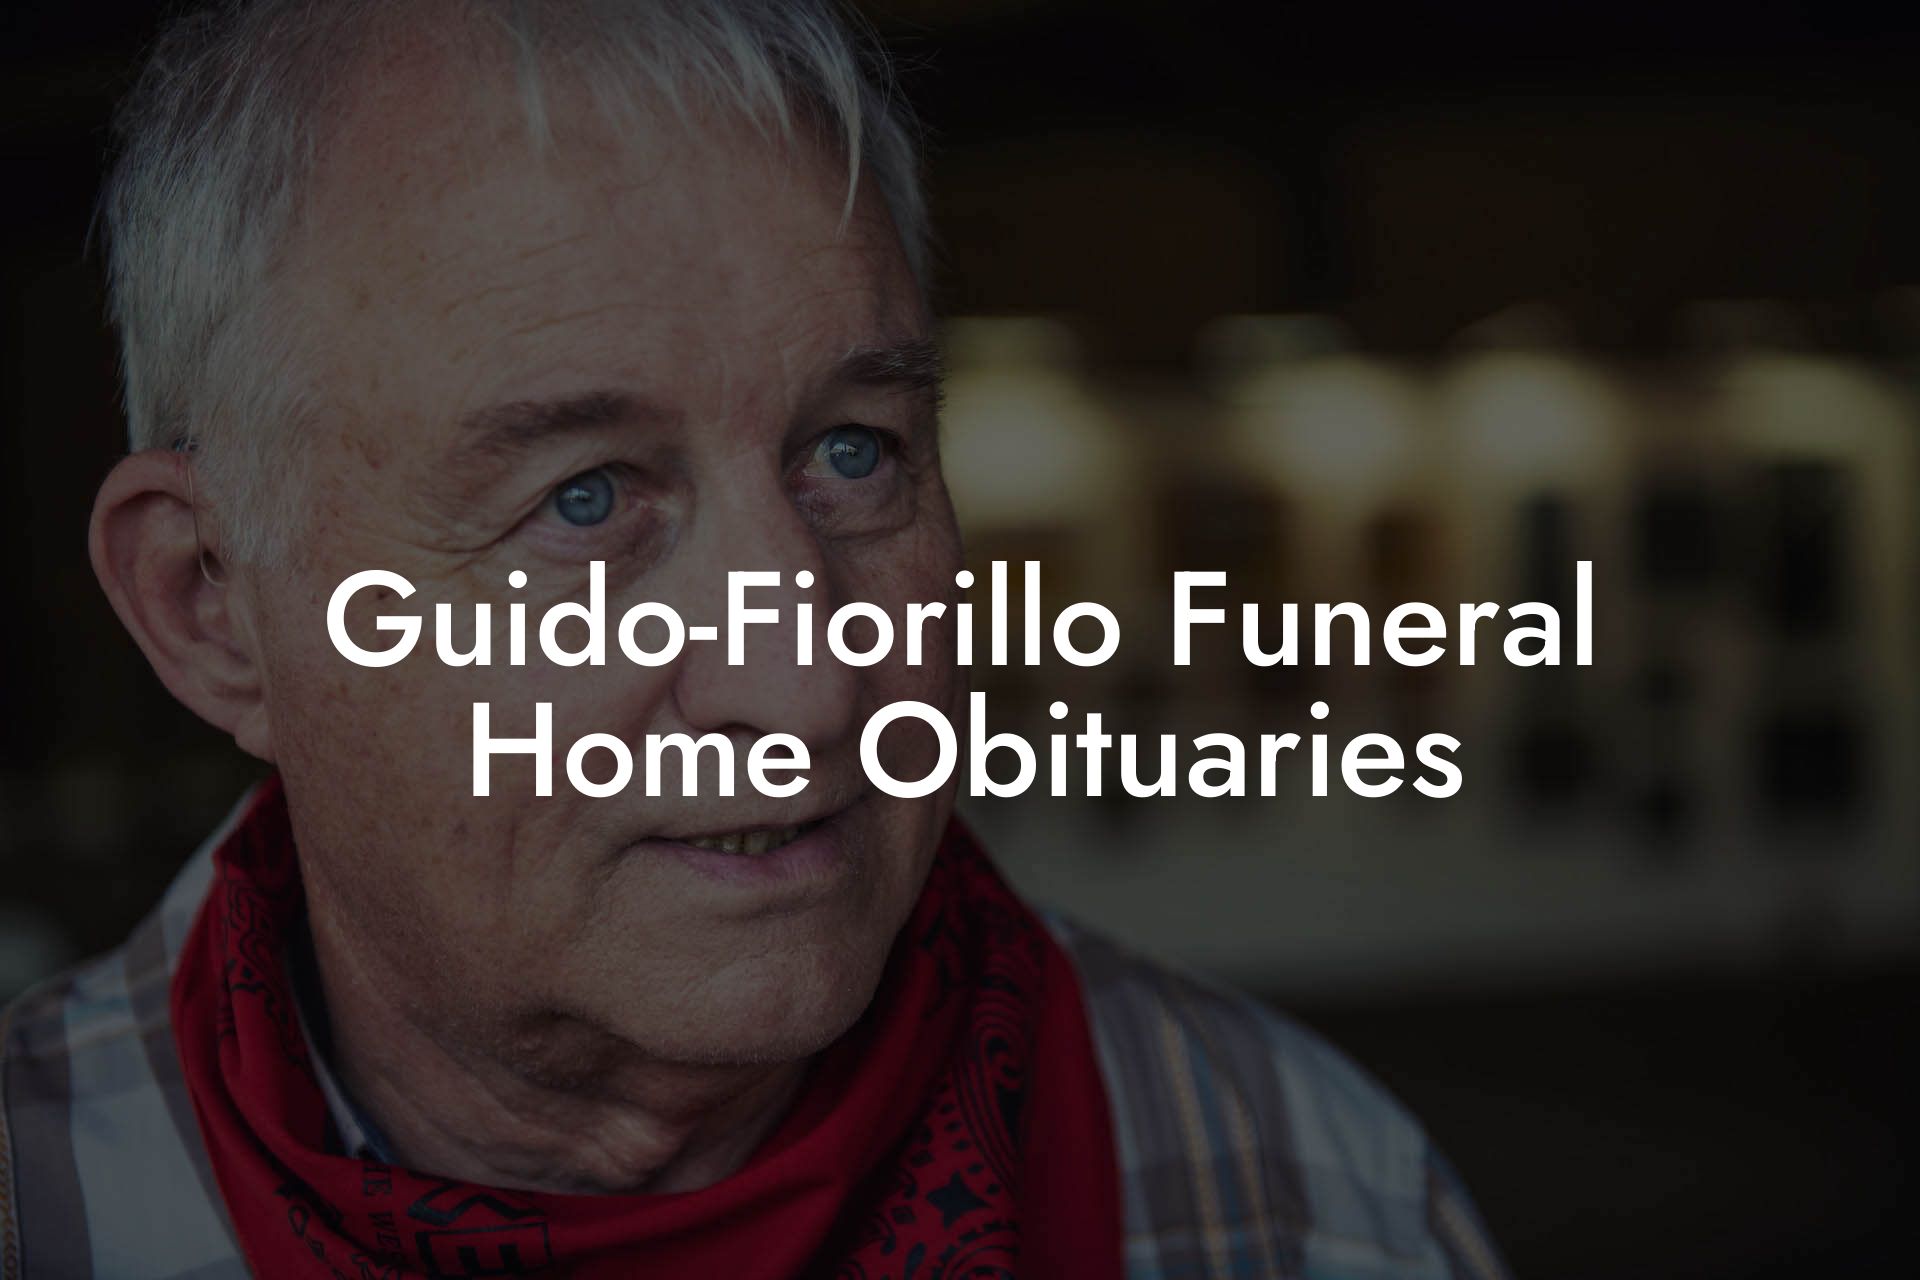 Guido-Fiorillo Funeral Home Obituaries